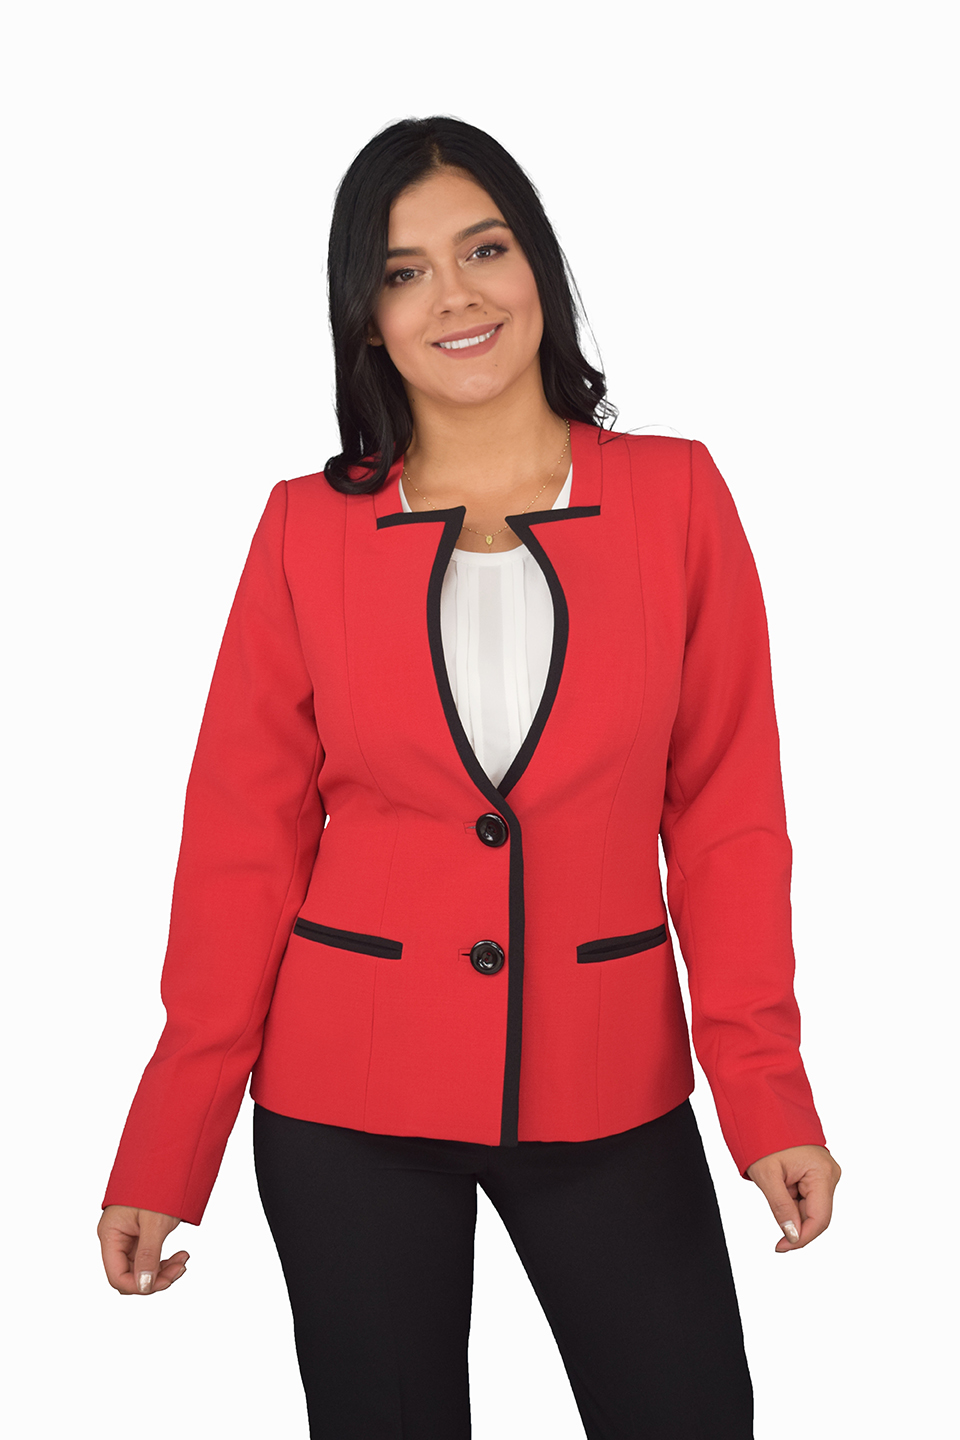 Crítico especificación mensaje uniformes corporativos celmy rojo-blanco-negro (0429) | Celmy diseño y  fabricación de uniformes empresariales y uniformes ejecutivos